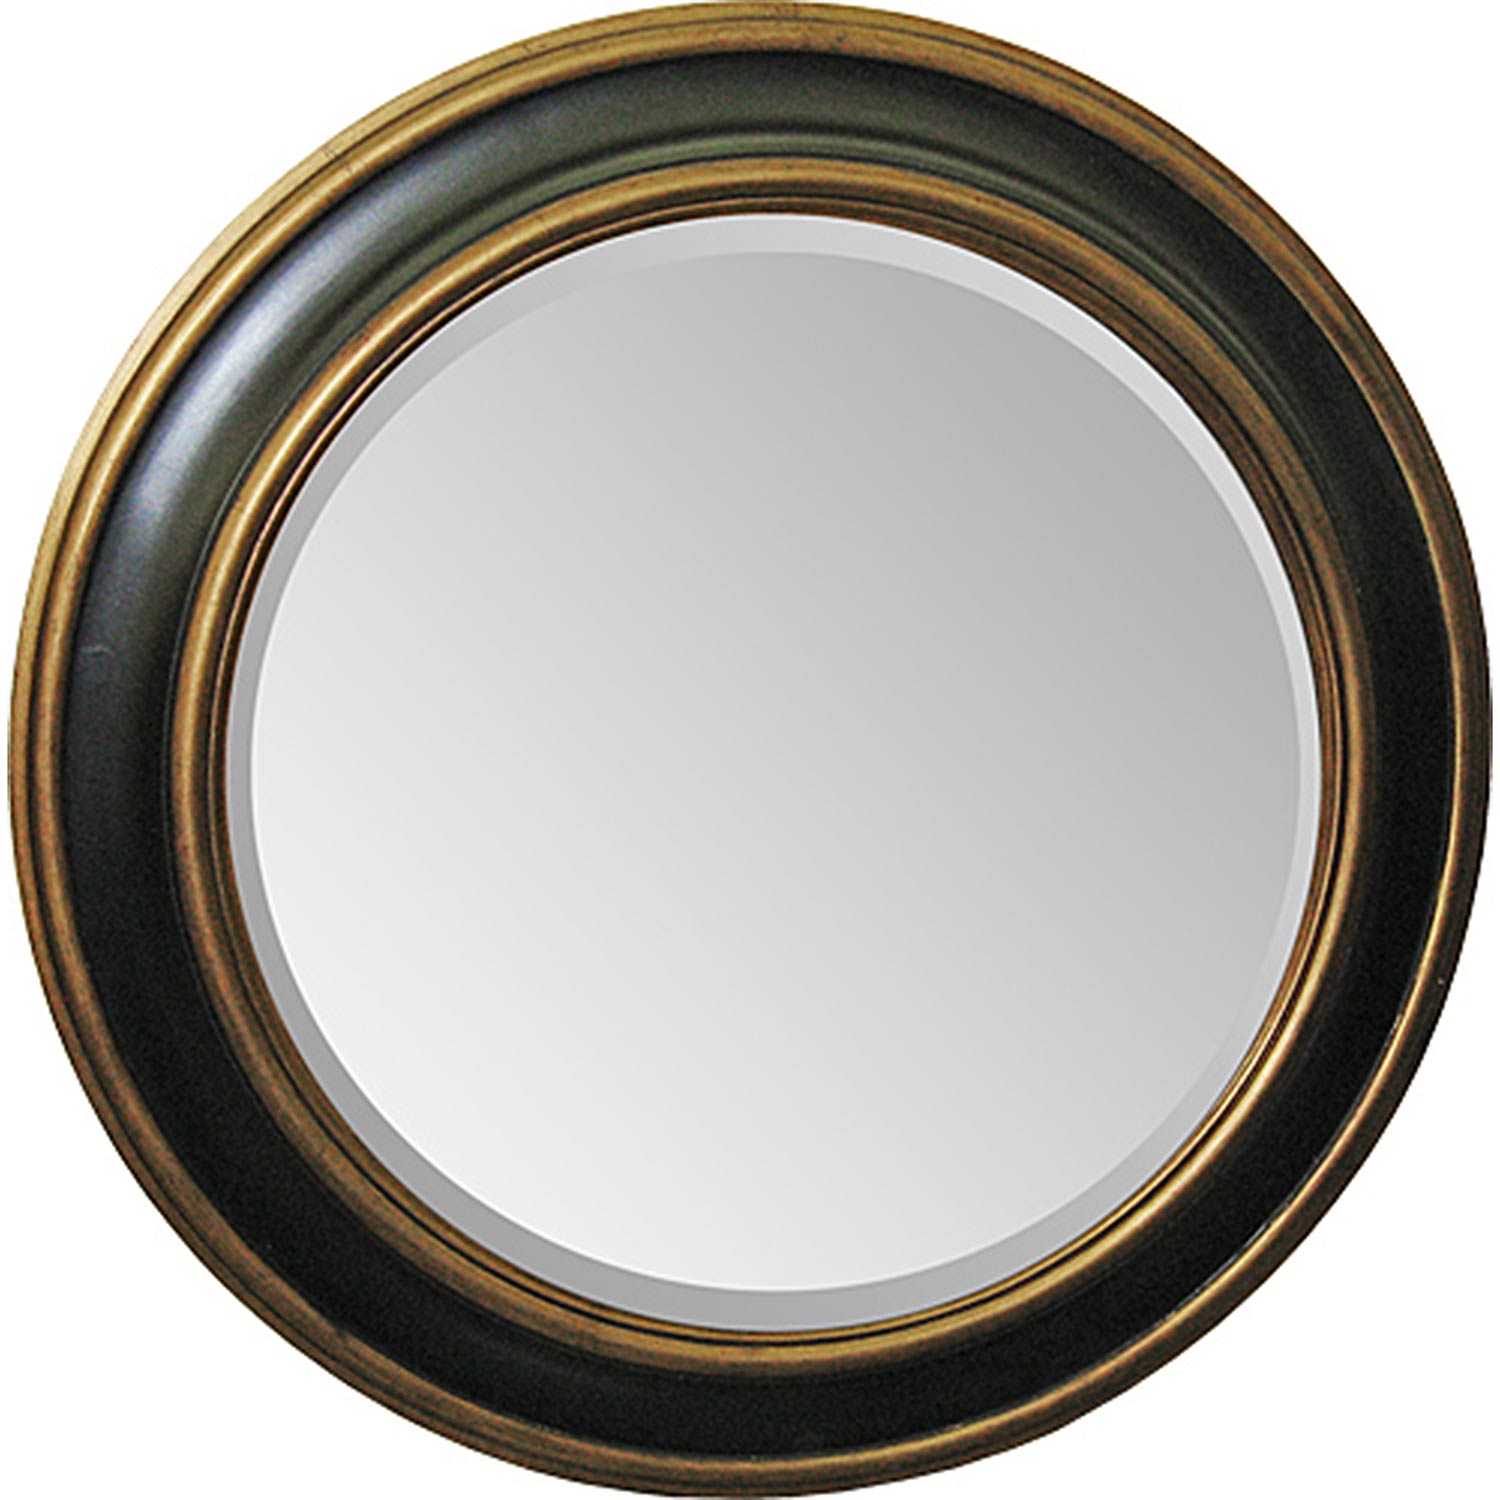 Ren-Wil MT894 Round Mirror - Antique Gold/Black